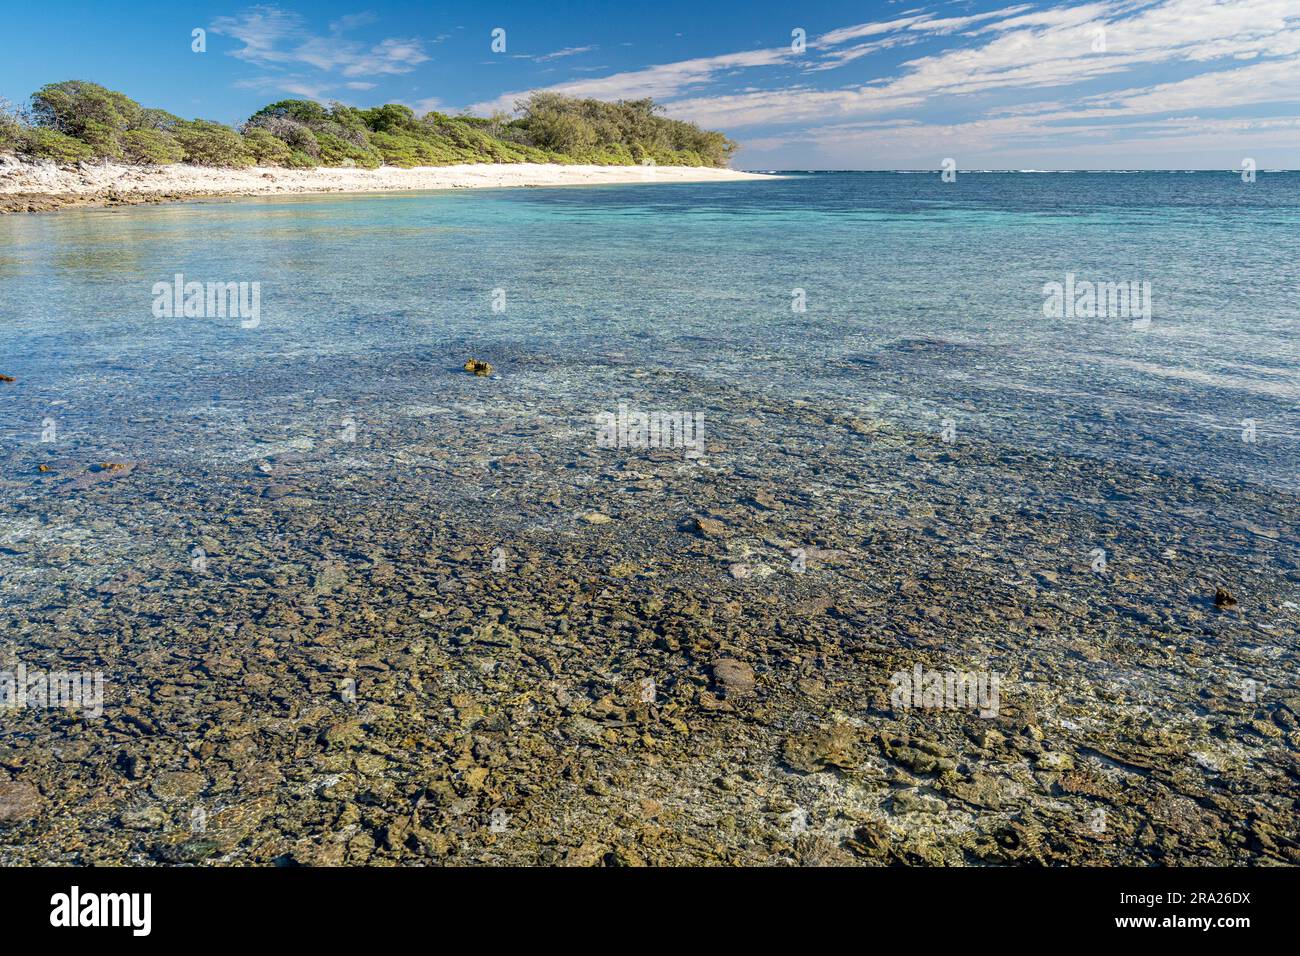 Lagon de corail entourant Lady Elliot Island, Grande Barrière de corail, Queensland, Australie Banque D'Images